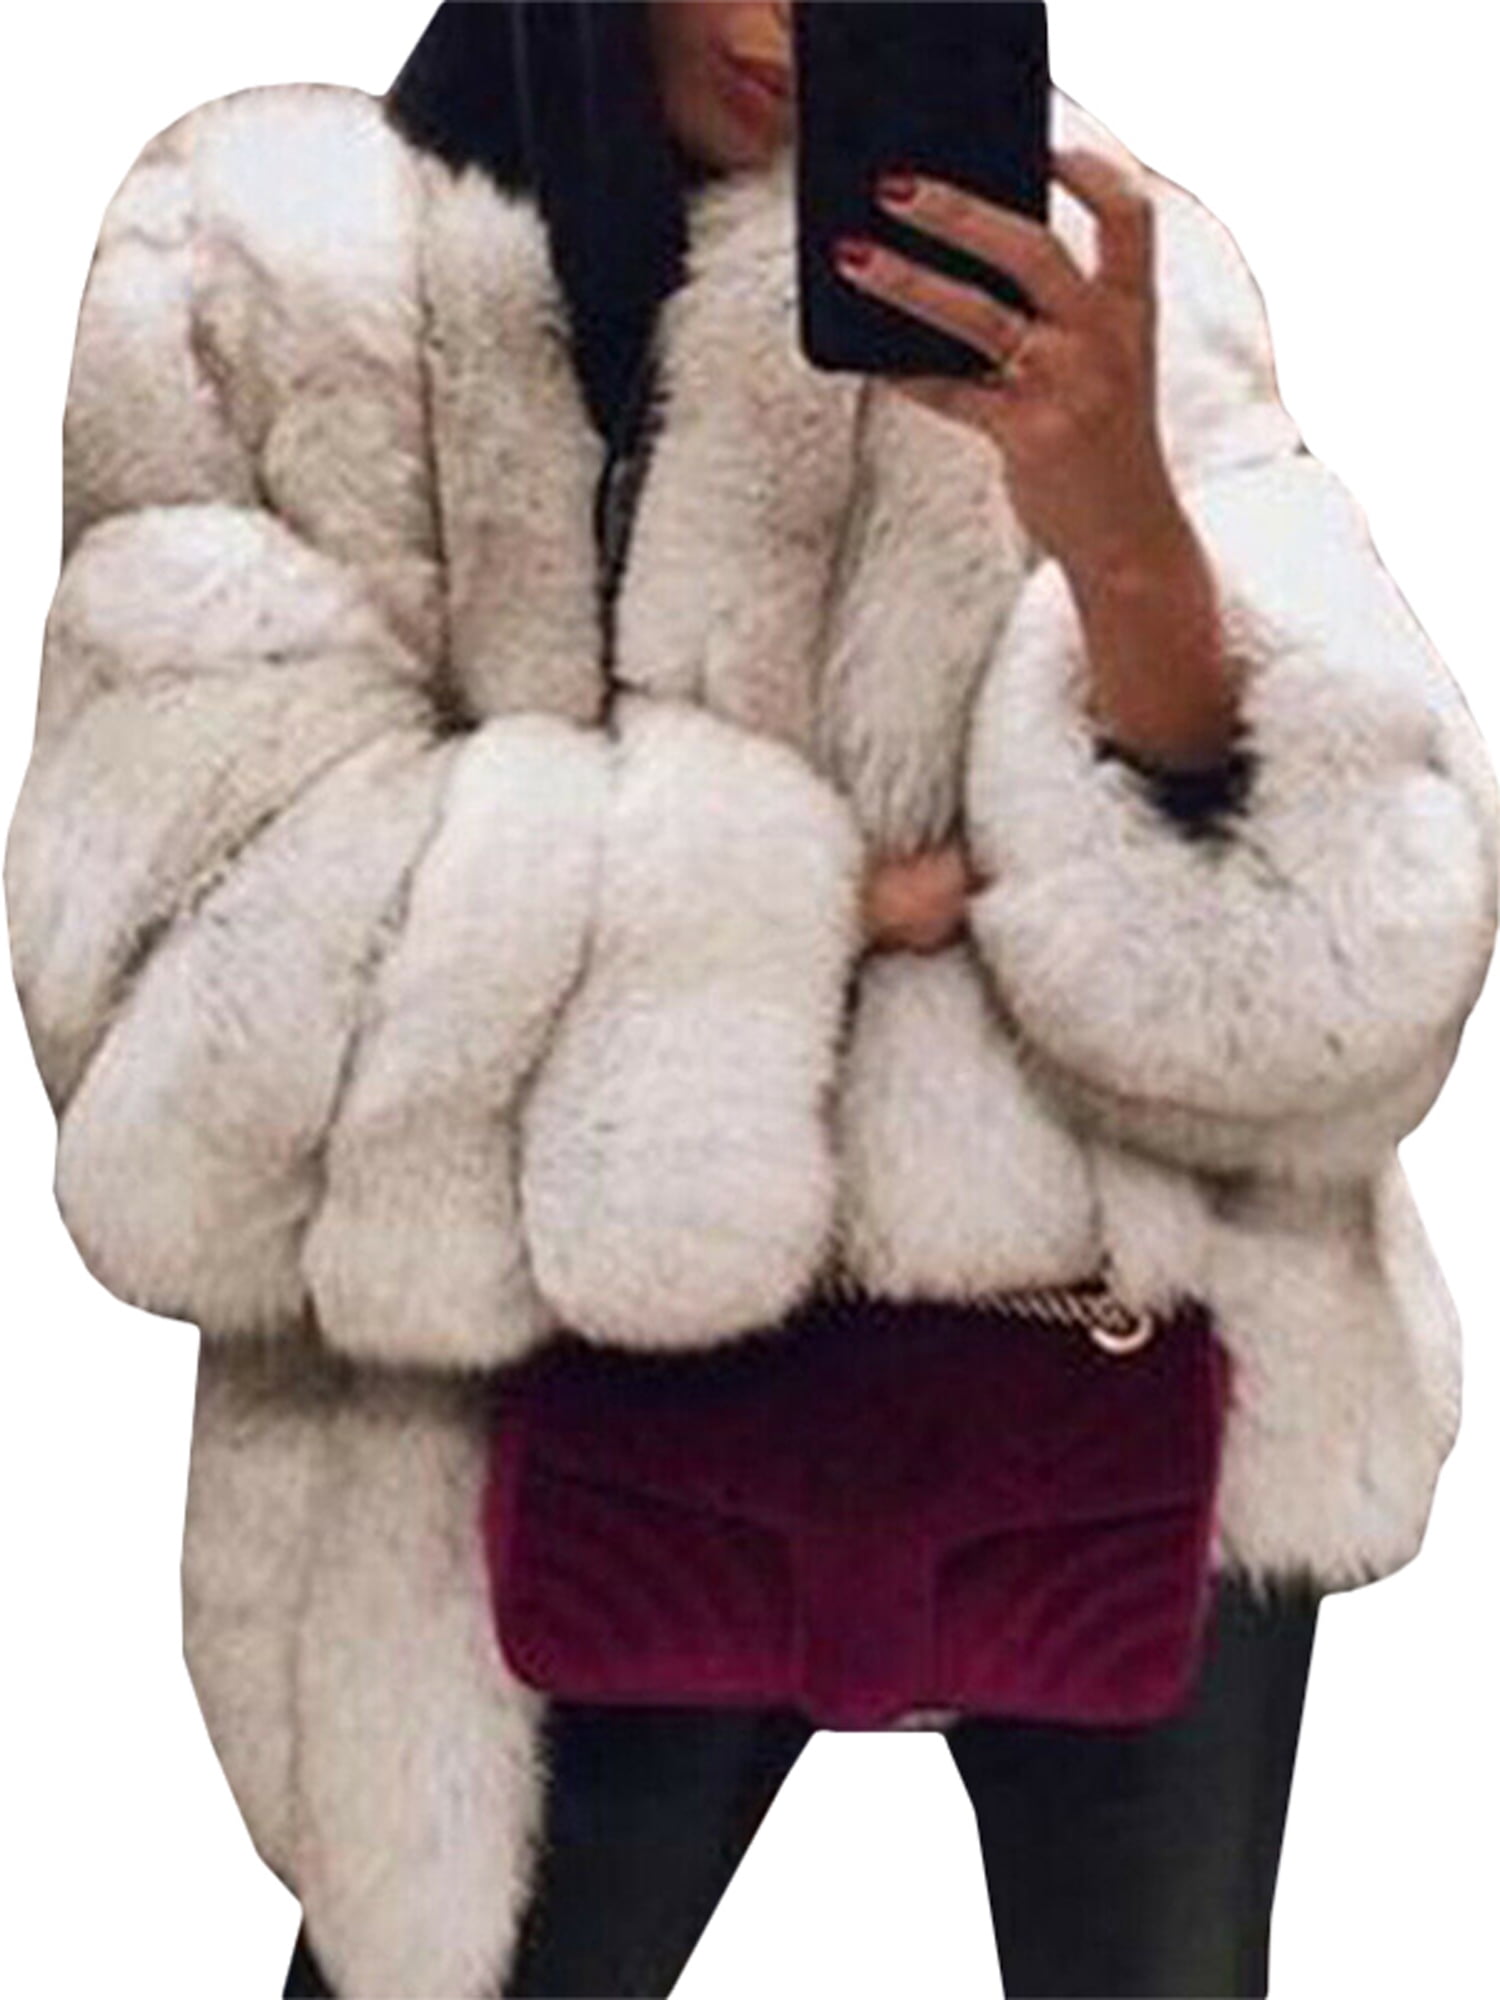 Women Teddy Bear Faux Fur Fluffy Coat Winter Thick Jacket Parka Cardigan Outwear